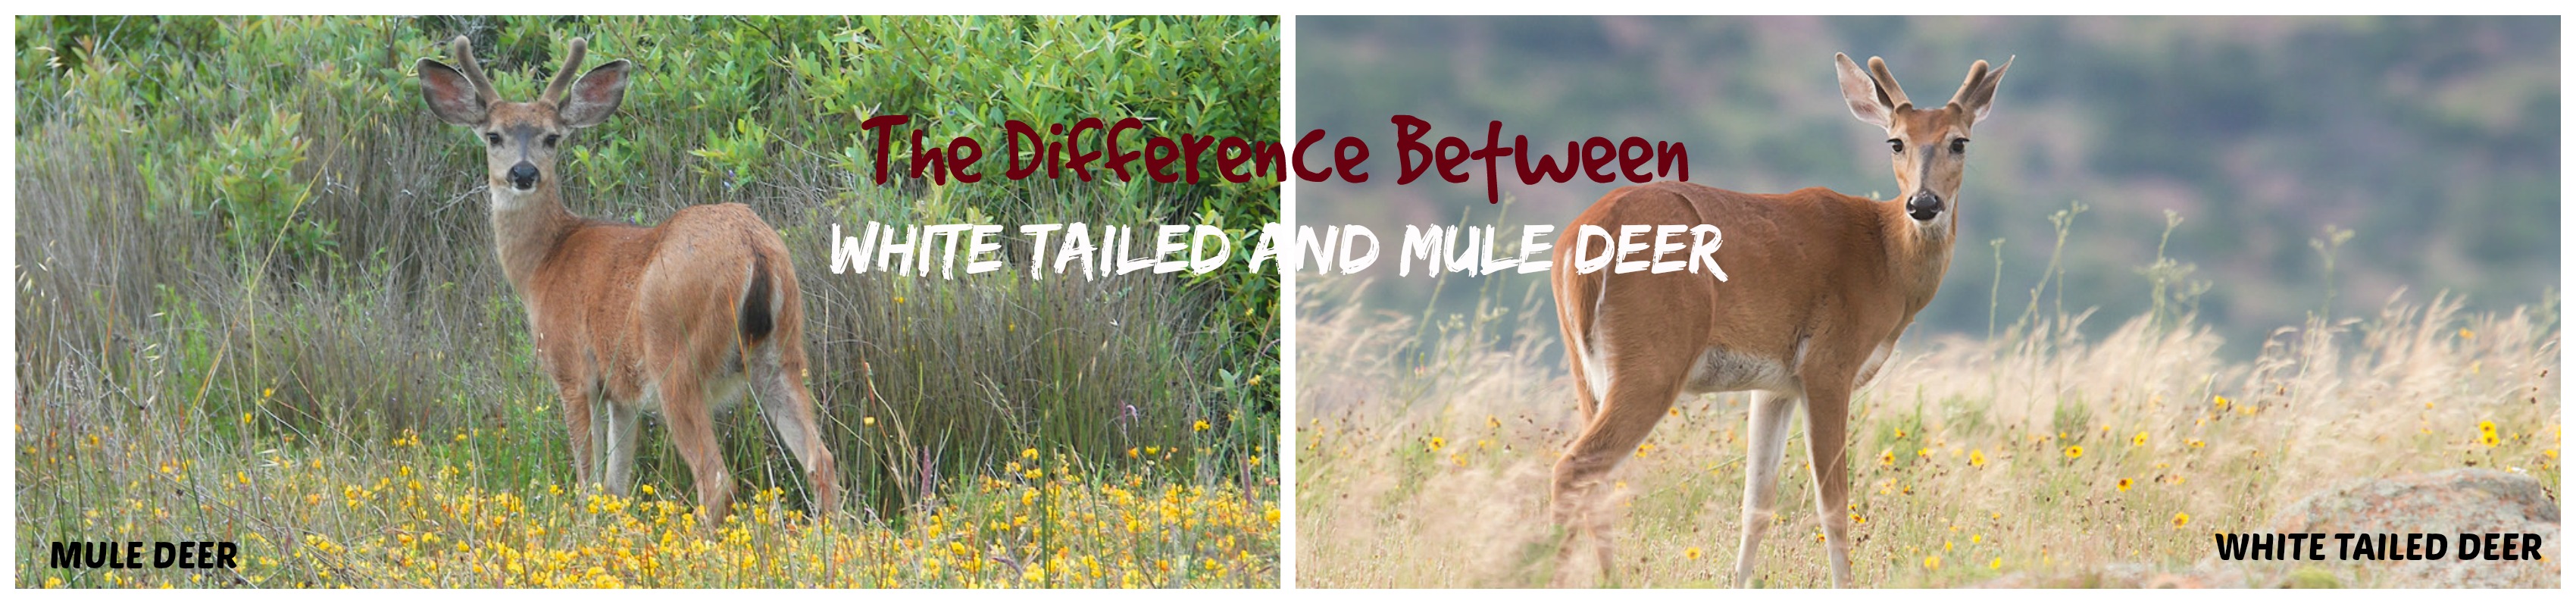 mule deer vs whitetail